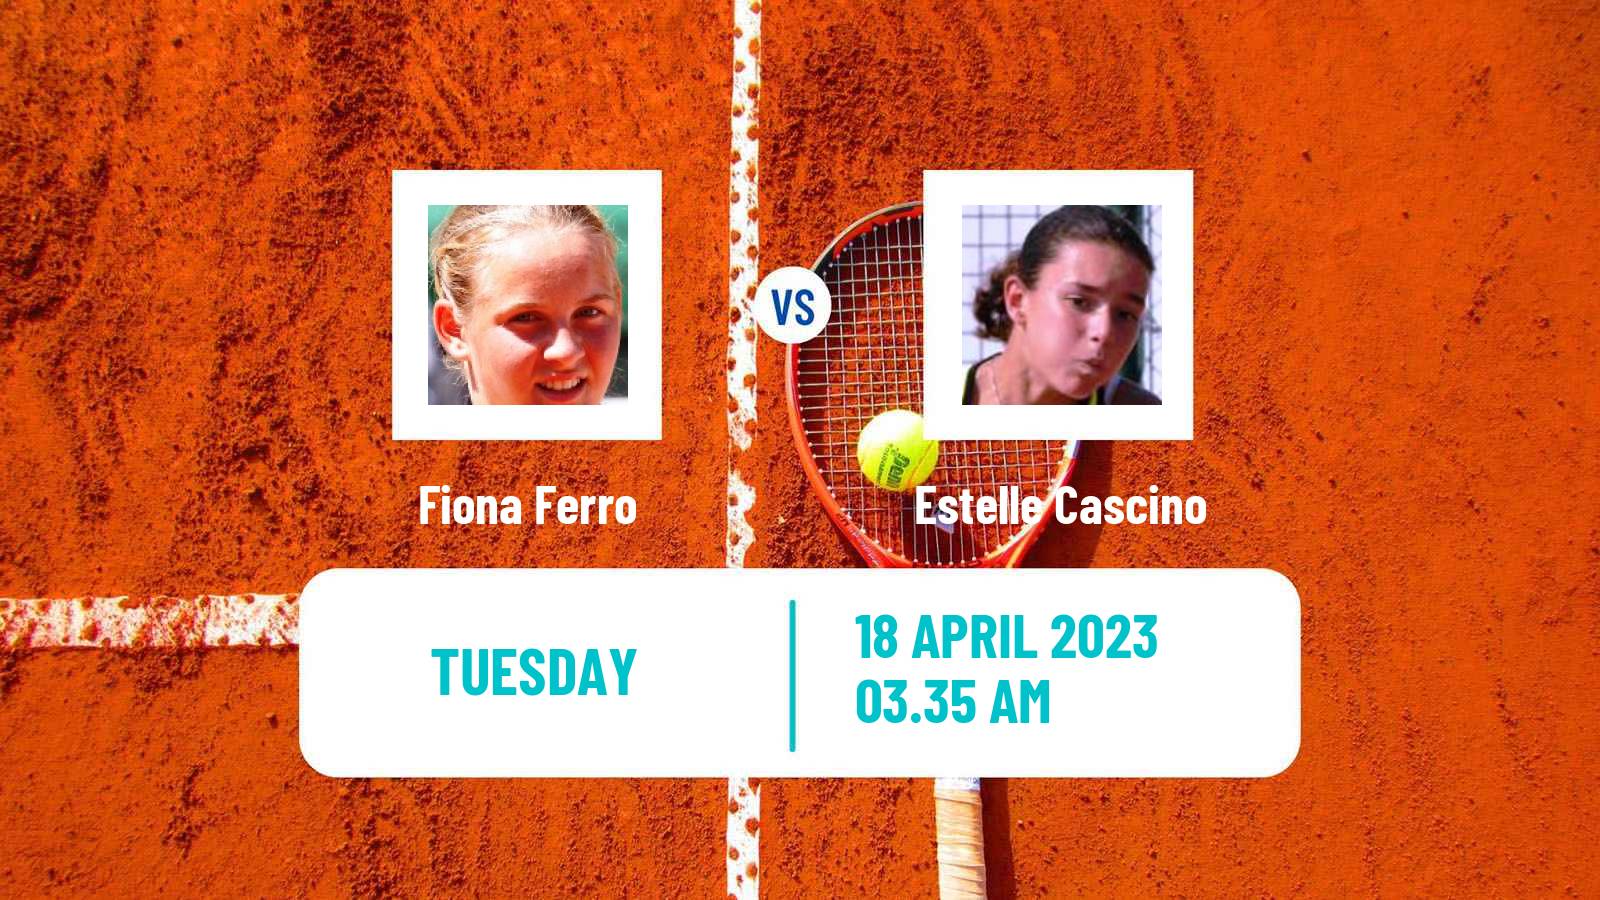 Tennis ITF Tournaments Fiona Ferro - Estelle Cascino